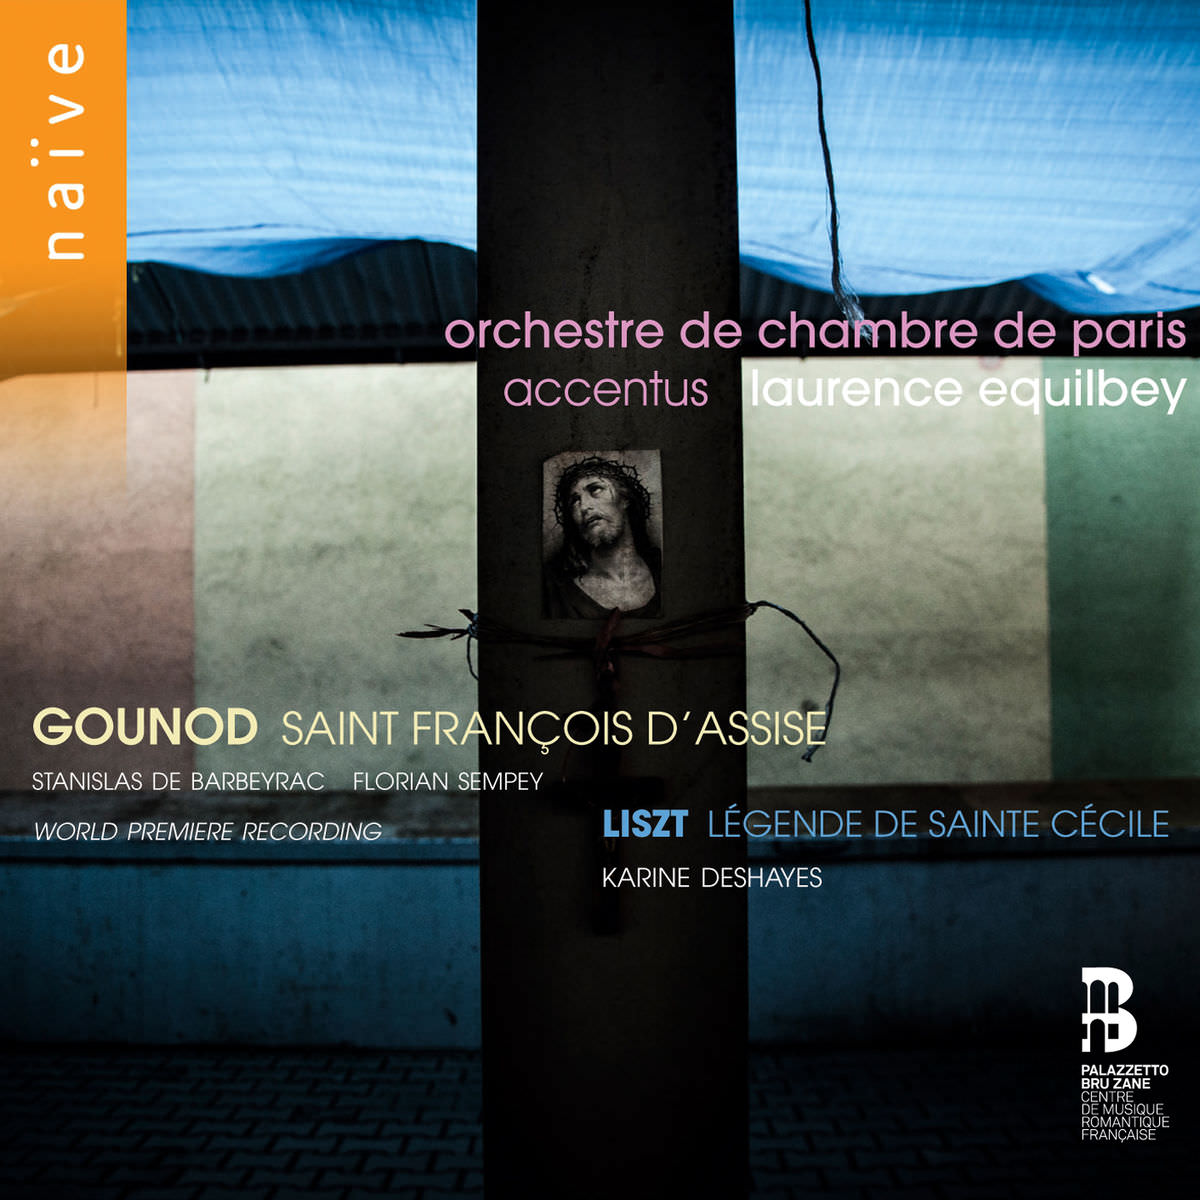 Accentus, Laurence Equilbey - Gounod: Saint Francois d’Assise; Liszt: Legende de Sainte Cecile (2018) [FLAC 24bit/48kHz]